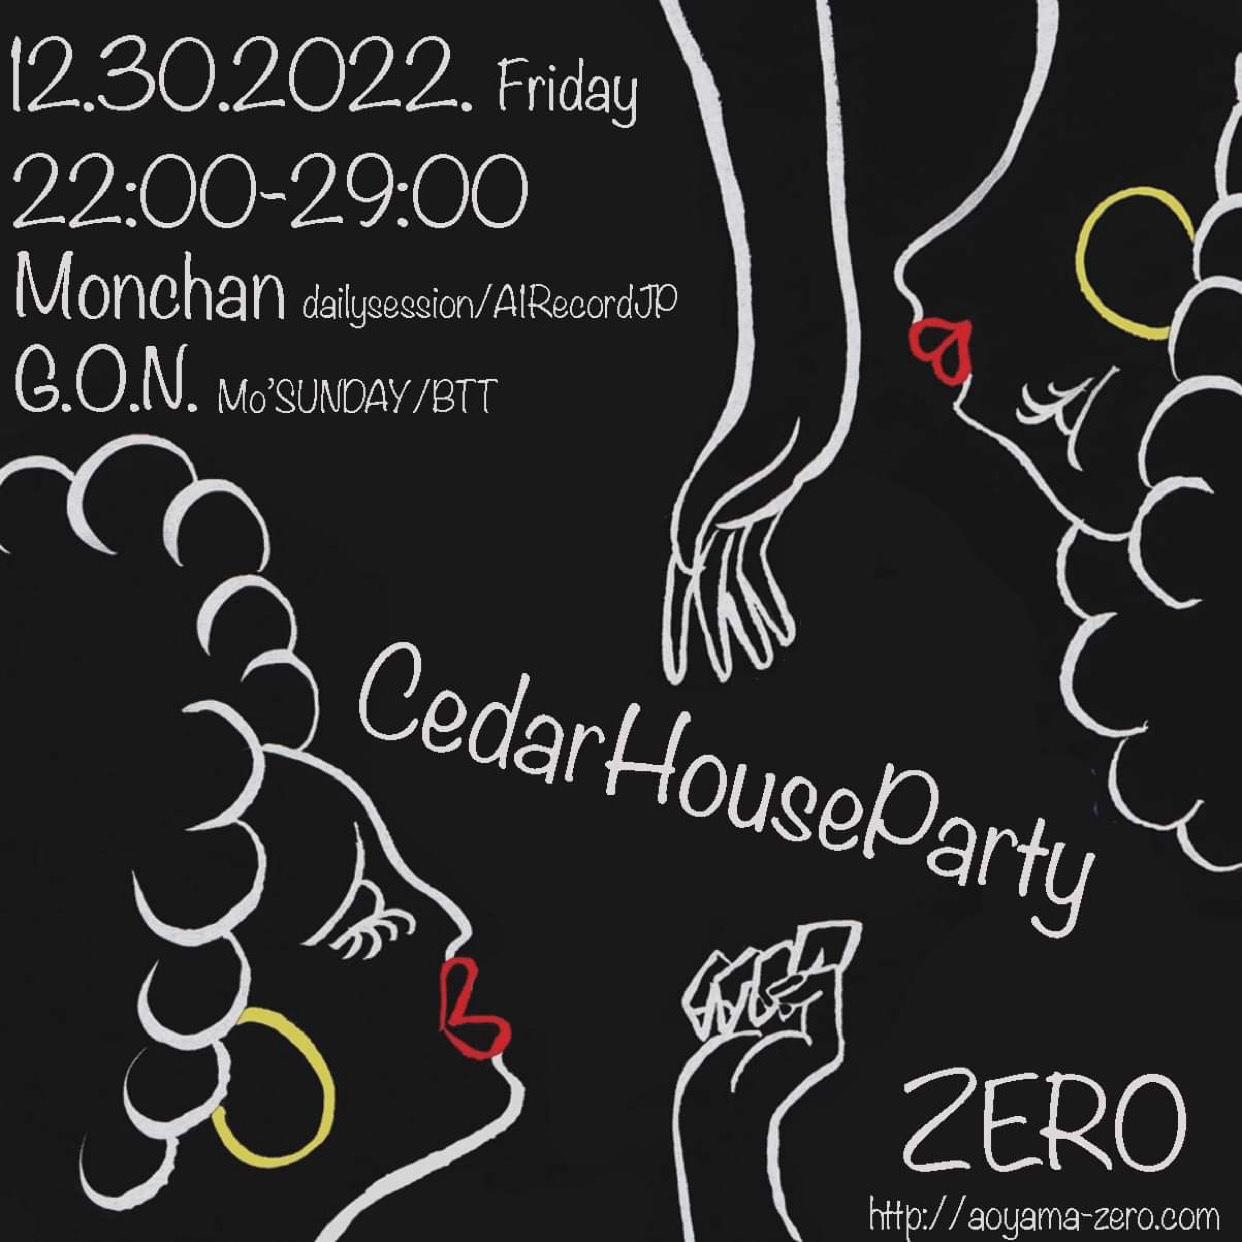 Cedar House Party